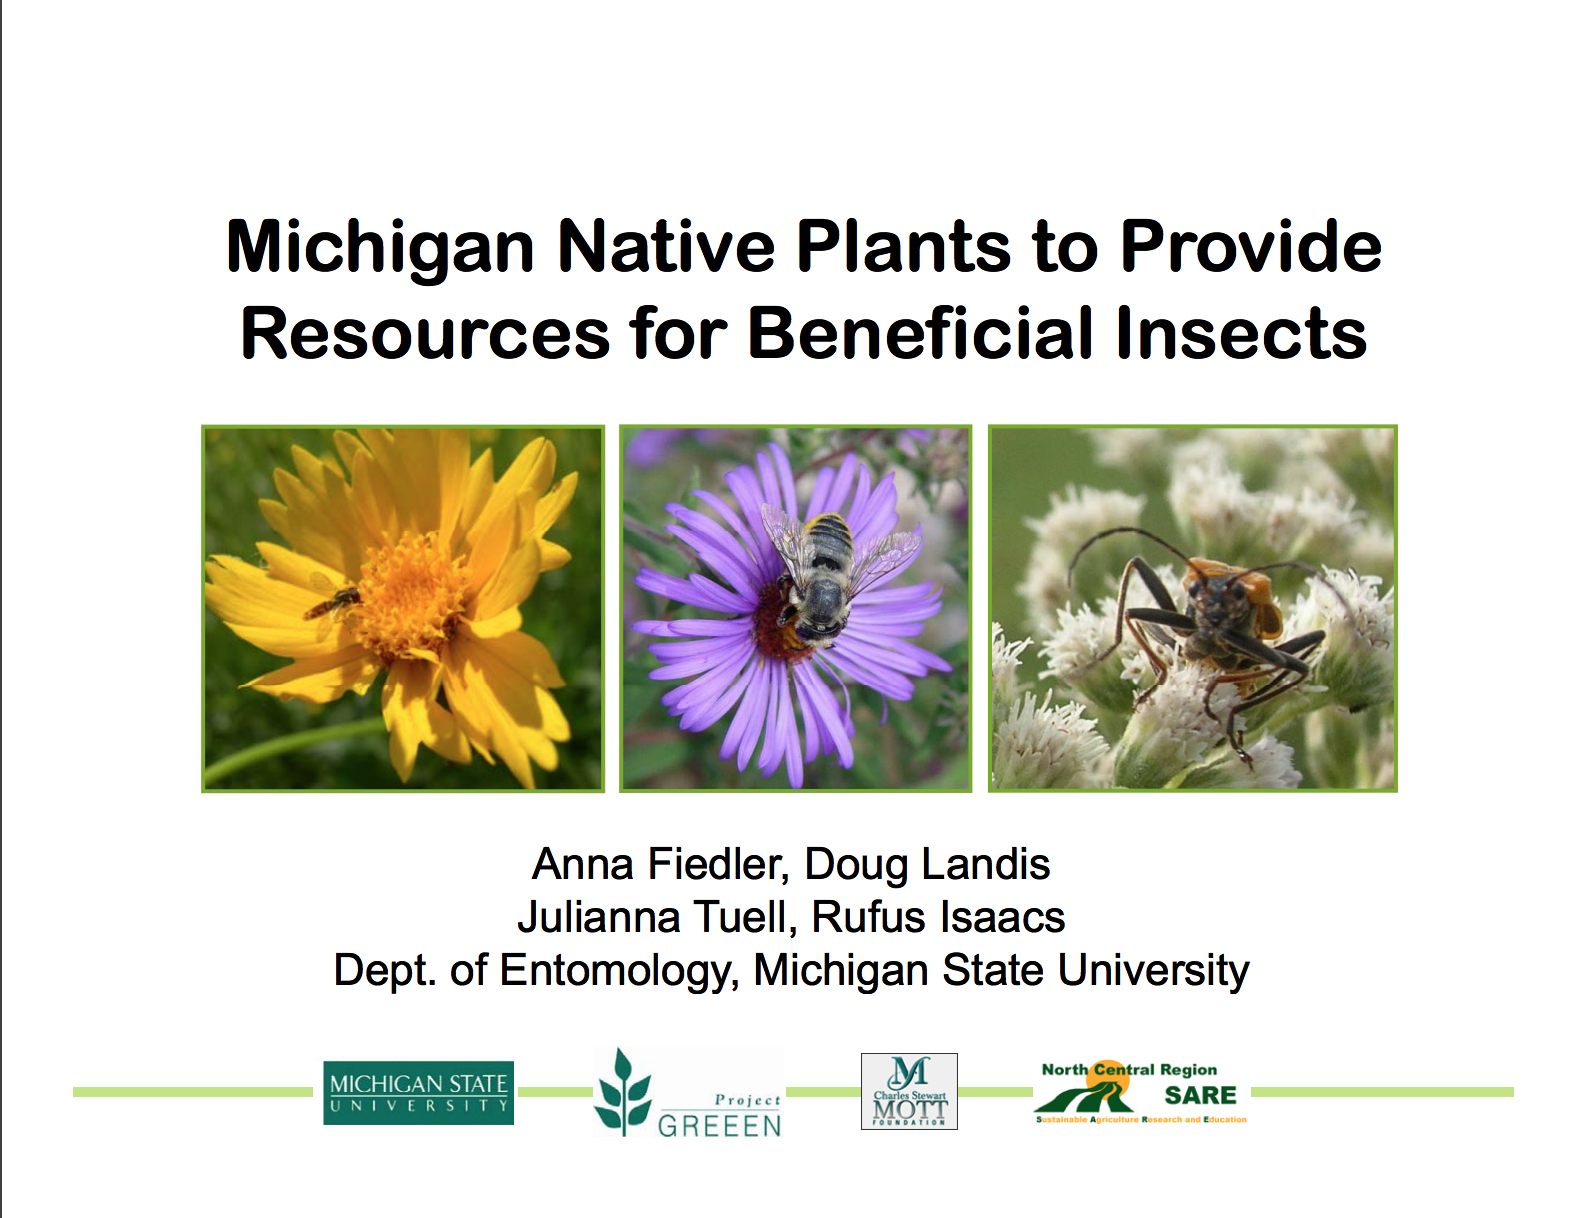 PDF cover of Michigan Native Plants